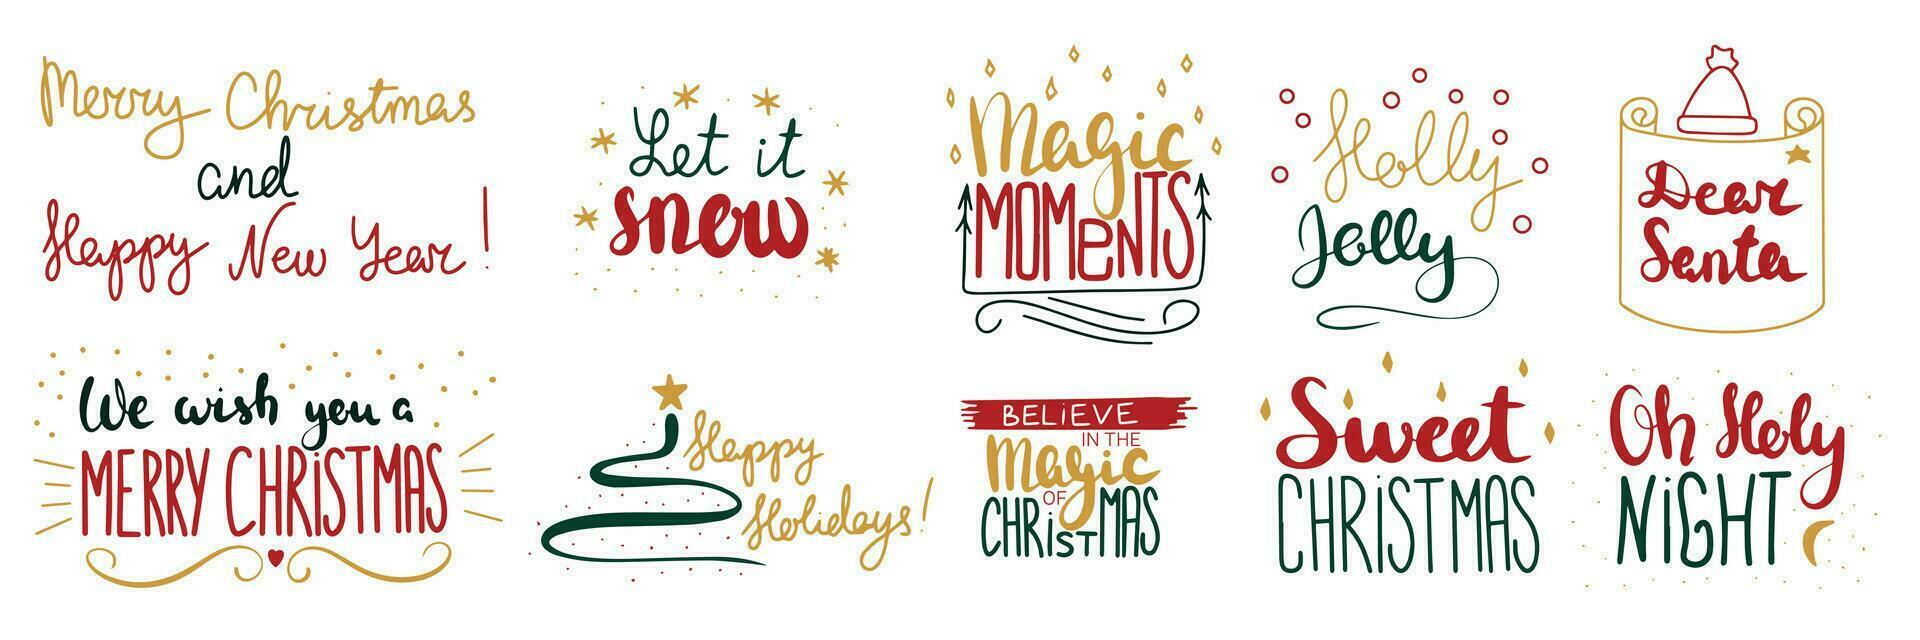 verzameling van vrolijk Kerstmis kort zinnen. laat het sneeuw, magie momenten, hulst vrolijk, Lieve de kerstman, zoet kerstmis, Oh heilig nacht. vector illustratie.